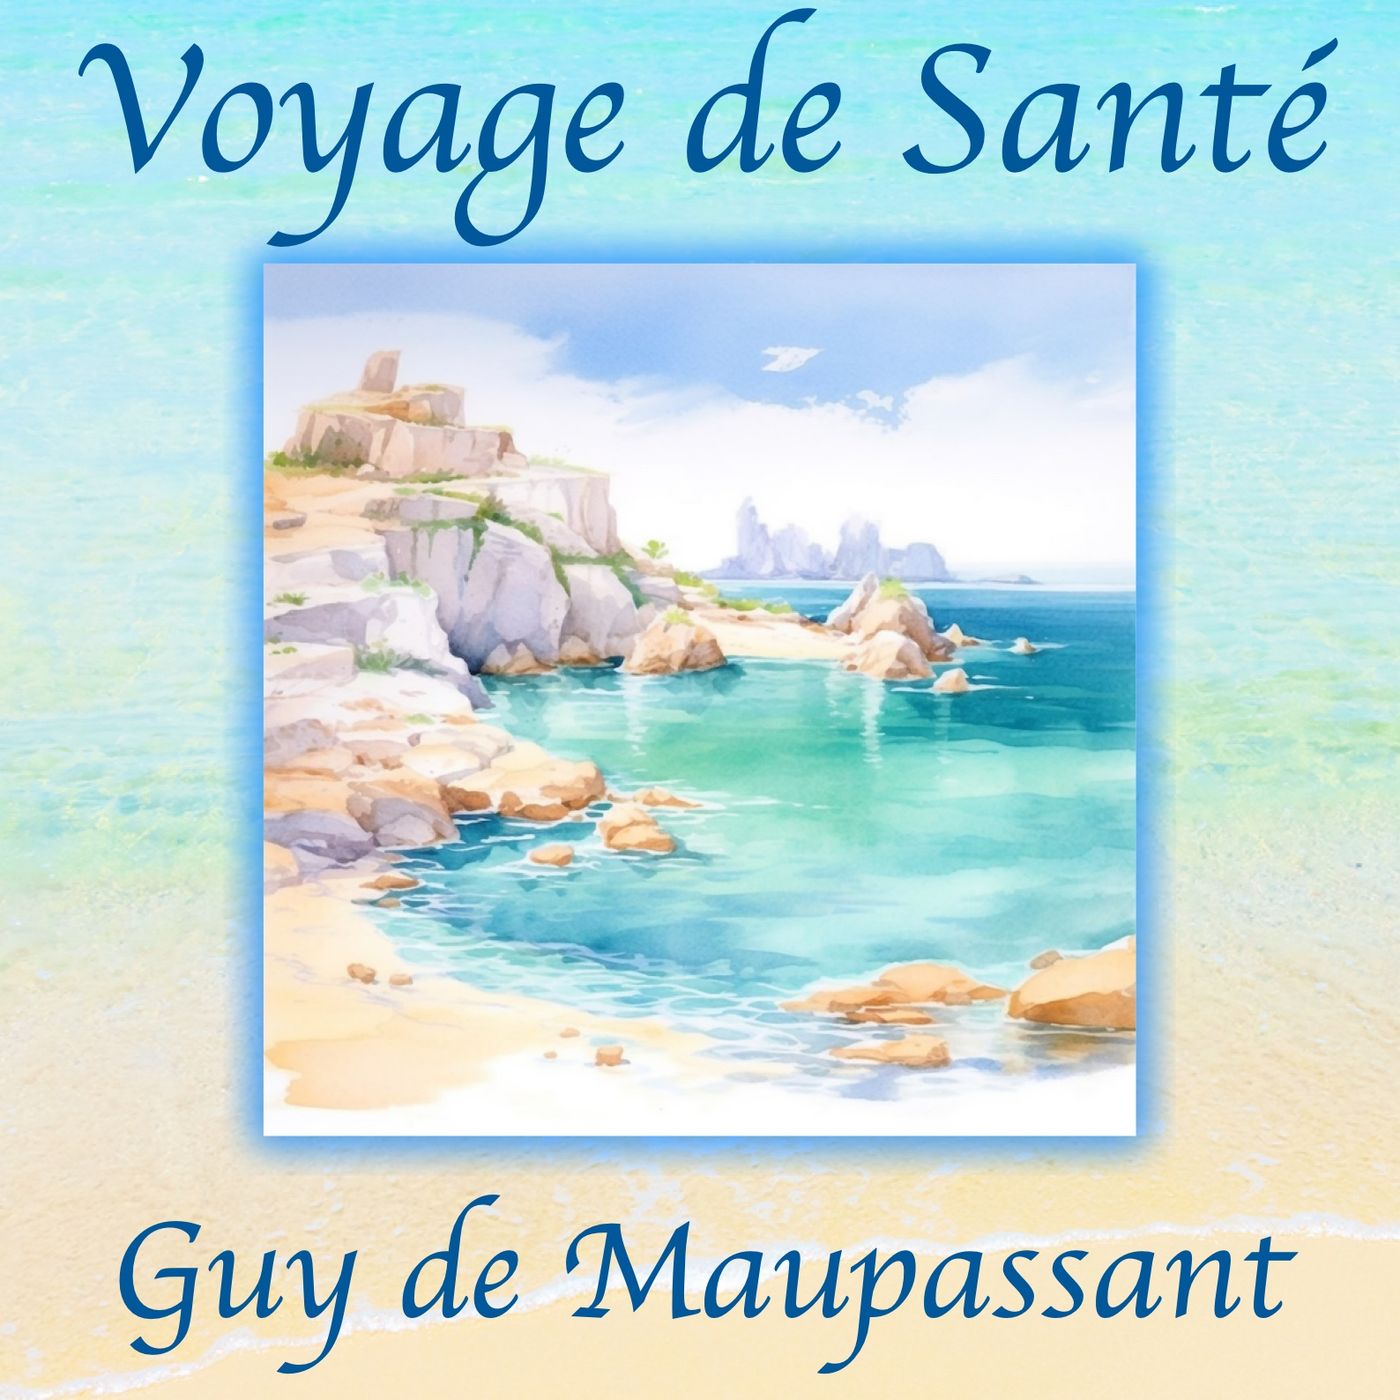 Voyage de Santé, Guy de Maupassant